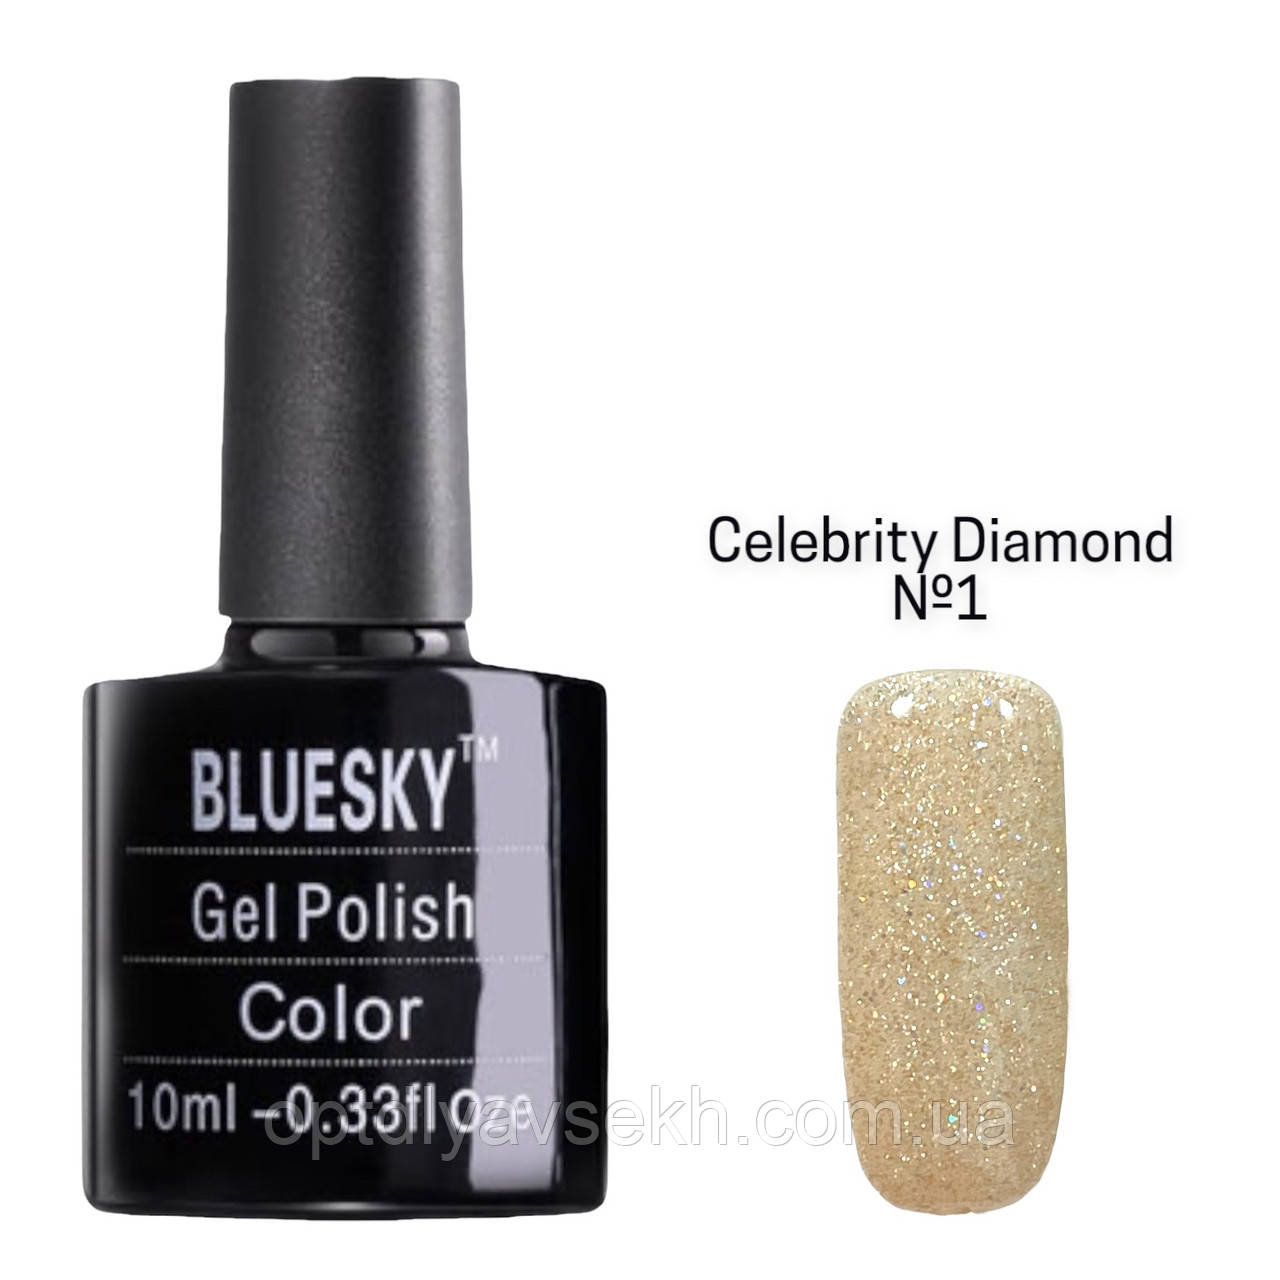 Кольоровий гель - лак Bluesky для манікюру та педикюру, 10 мл. Celebrity Diamond №1